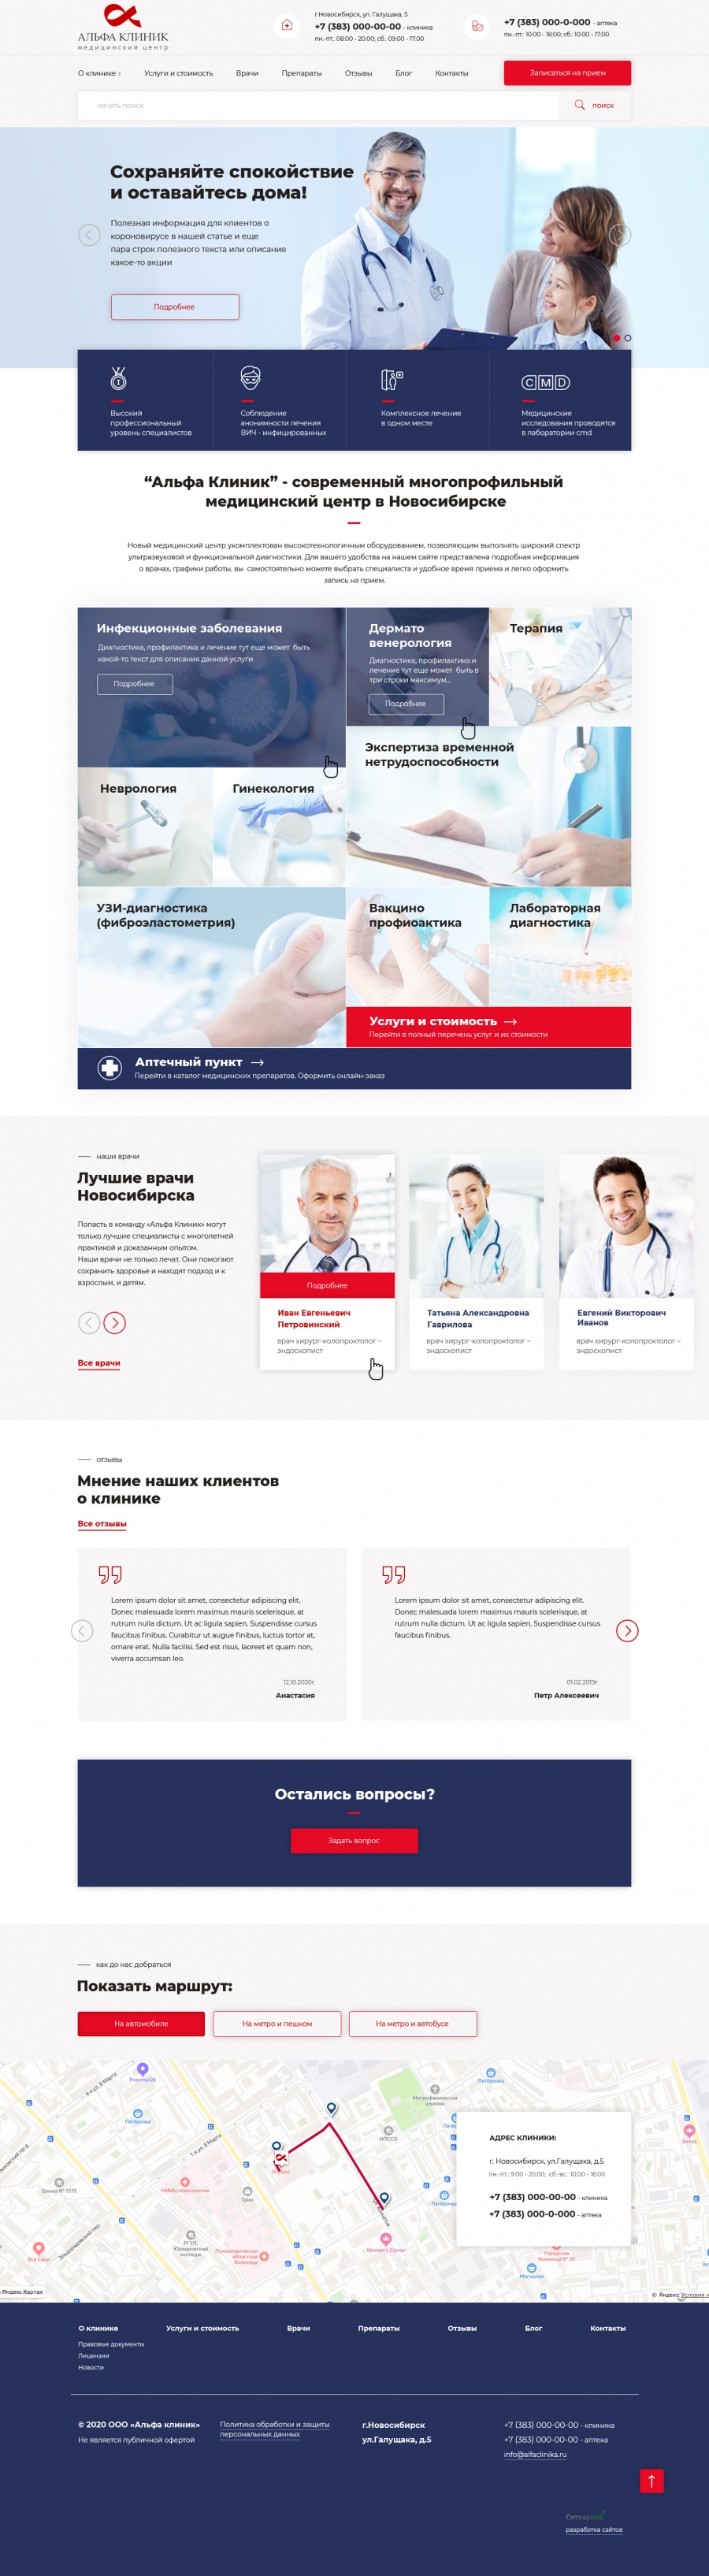 Разработка сайта медицинского центра Альфа Клиник в Новосибирске